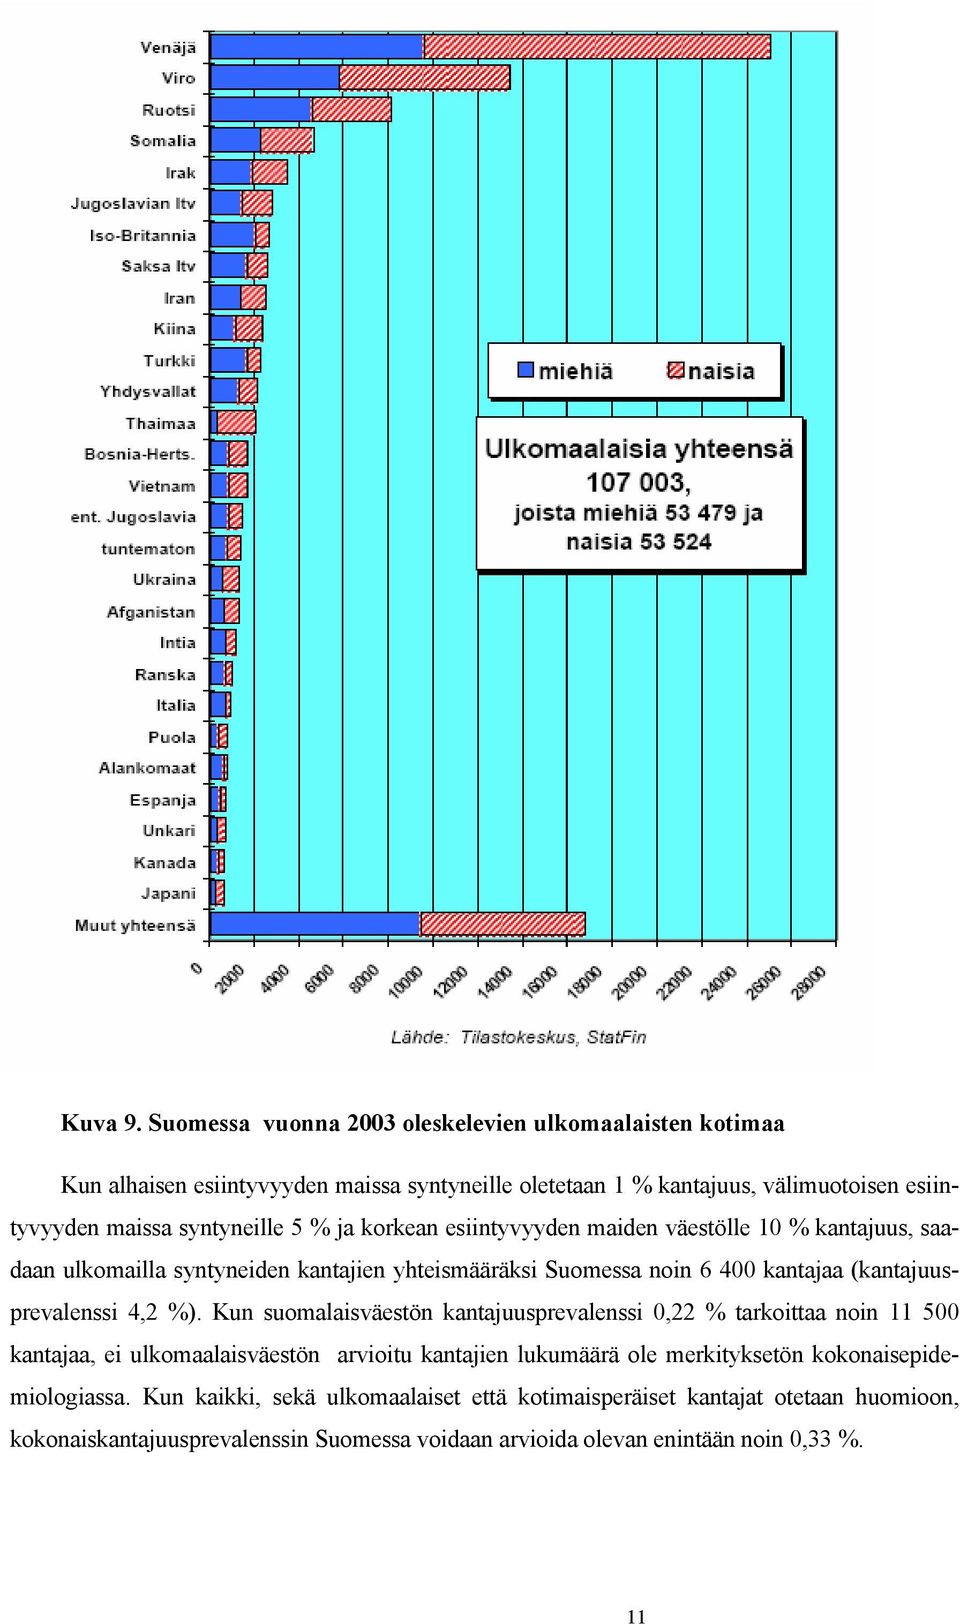 5 % ja korkean esiintyvyyden maiden väestölle 10 % kantajuus, saadaan ulkomailla syntyneiden kantajien yhteismääräksi Suomessa noin 6 400 kantajaa (kantajuusprevalenssi 4,2 %).